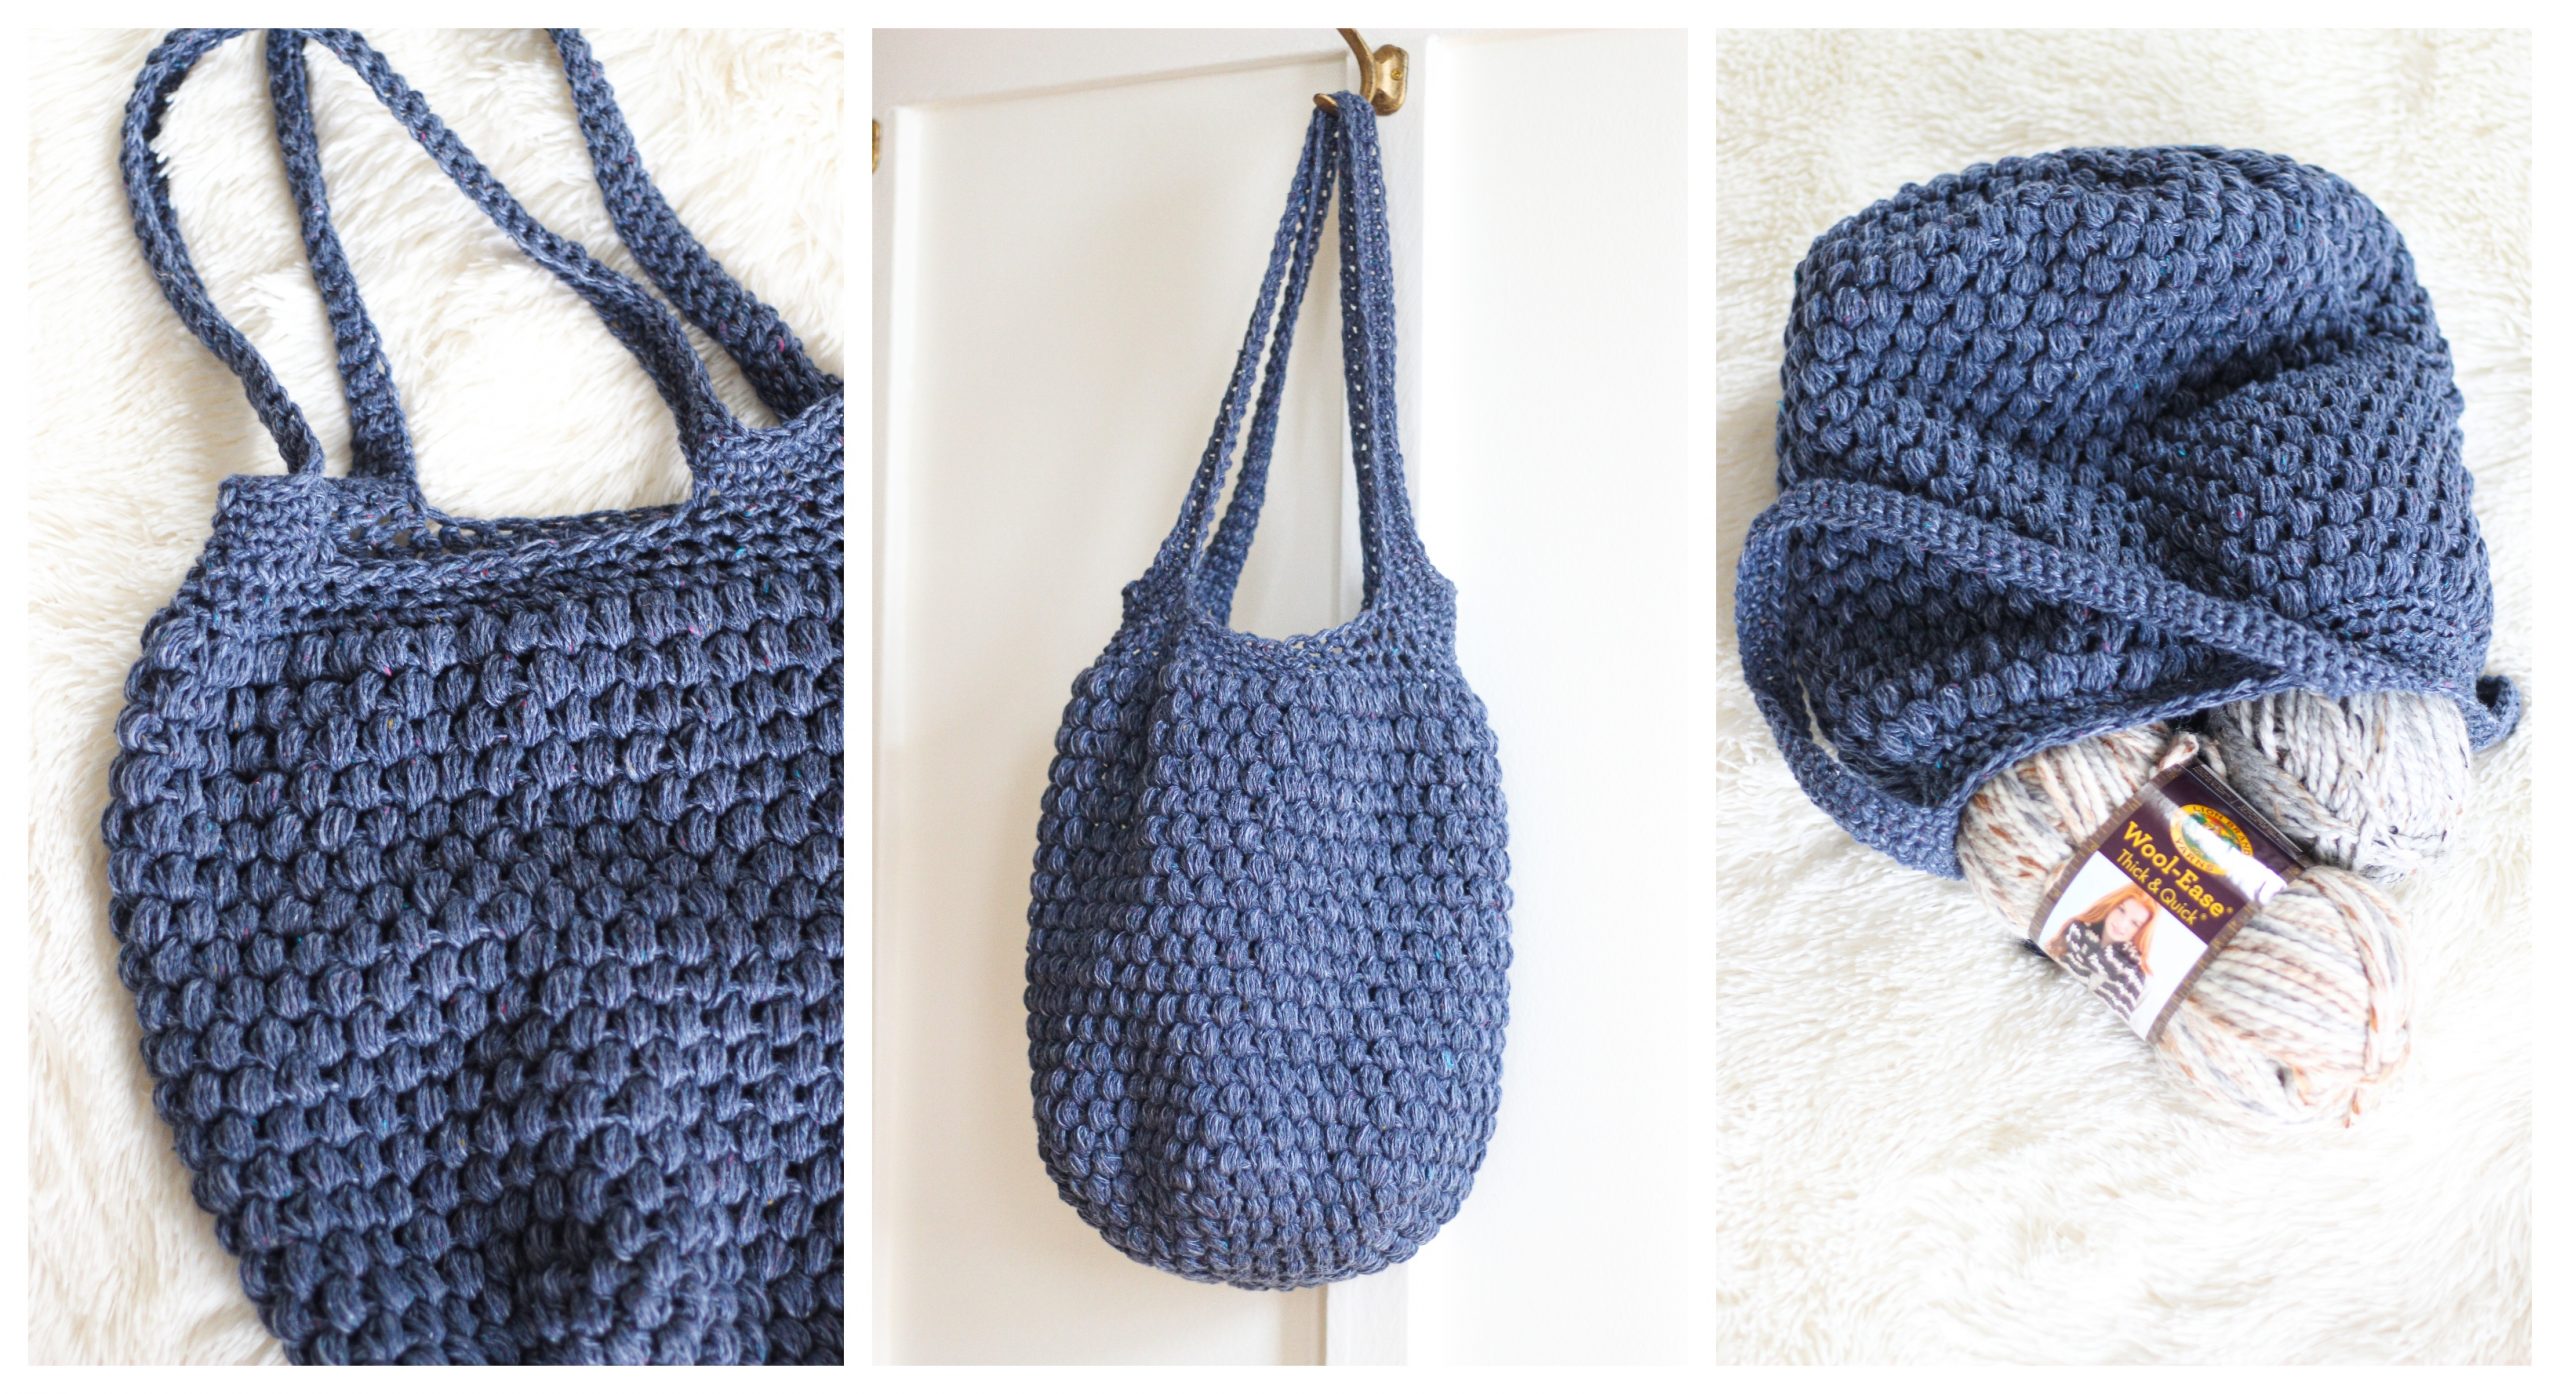 Puff Stitch Market Bag Crochet Pattern | AllFreeCrochet.com